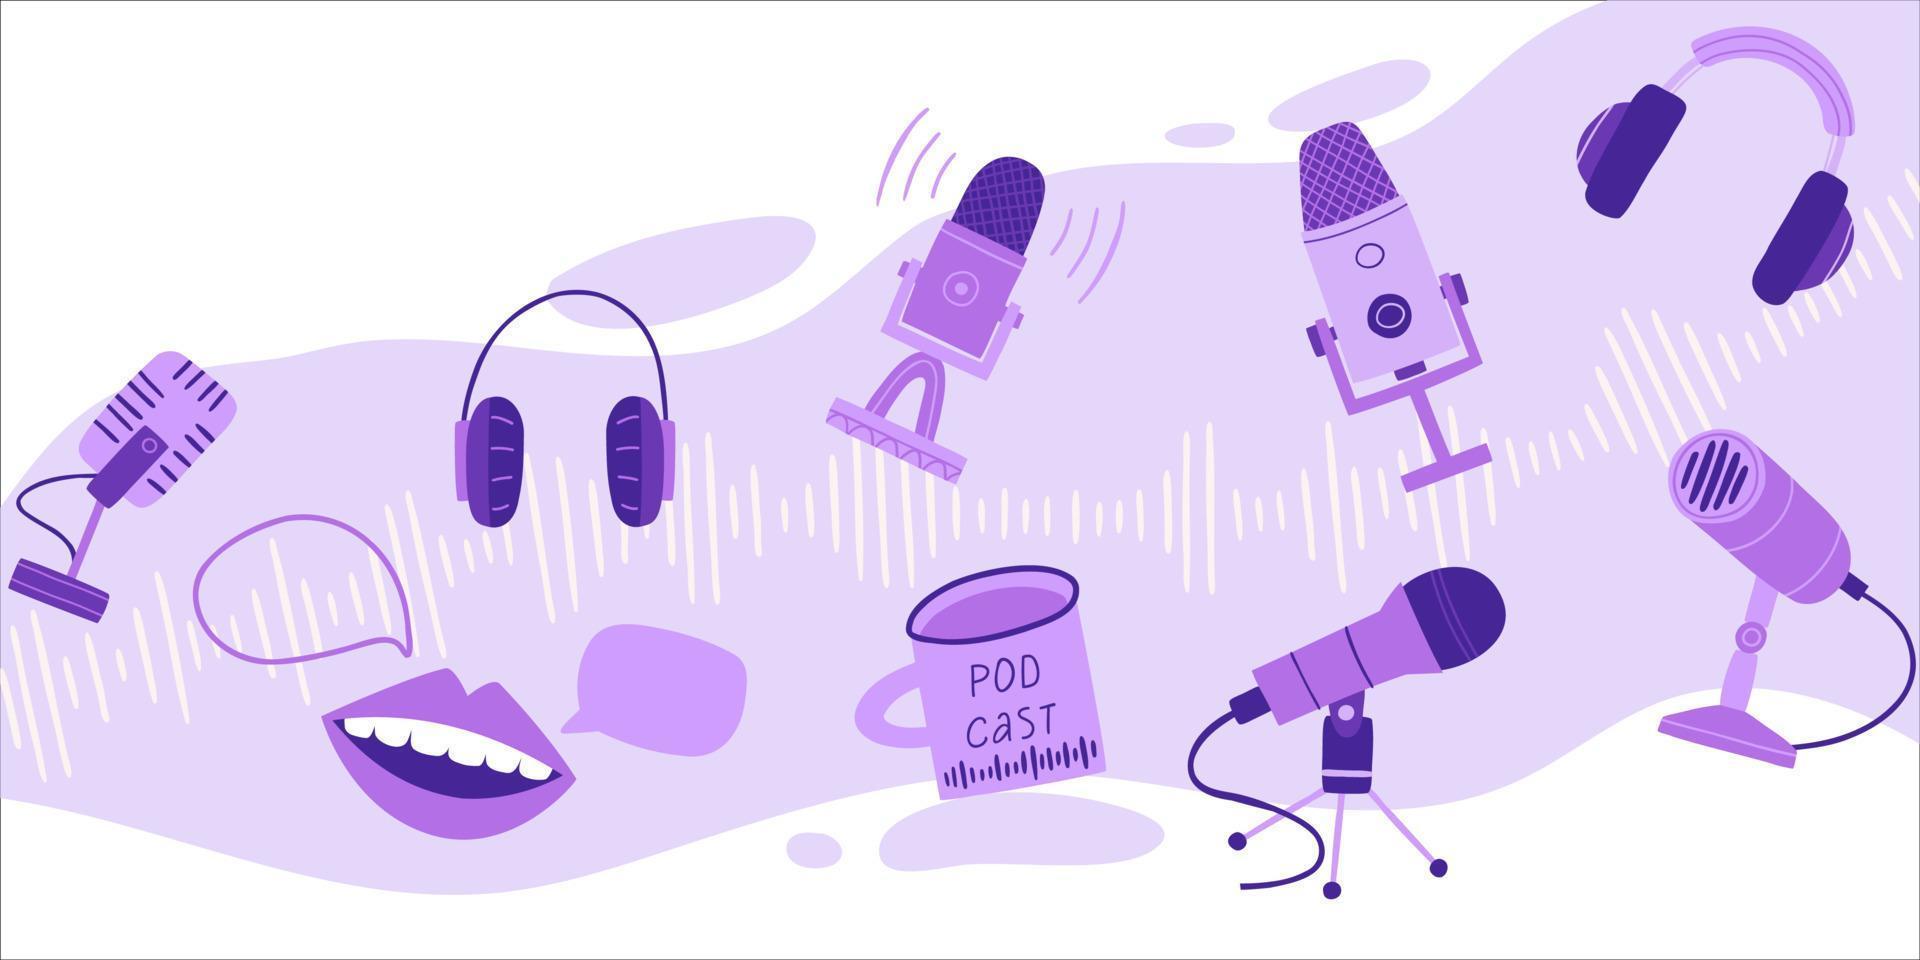 design della copertina del podcast in uno stile alla moda e colore velluto viola. microfoni, registratori di suoni, cuffie, un gabbiano con una bevanda calda. illustrazione disegnata a mano di vettore piatto.